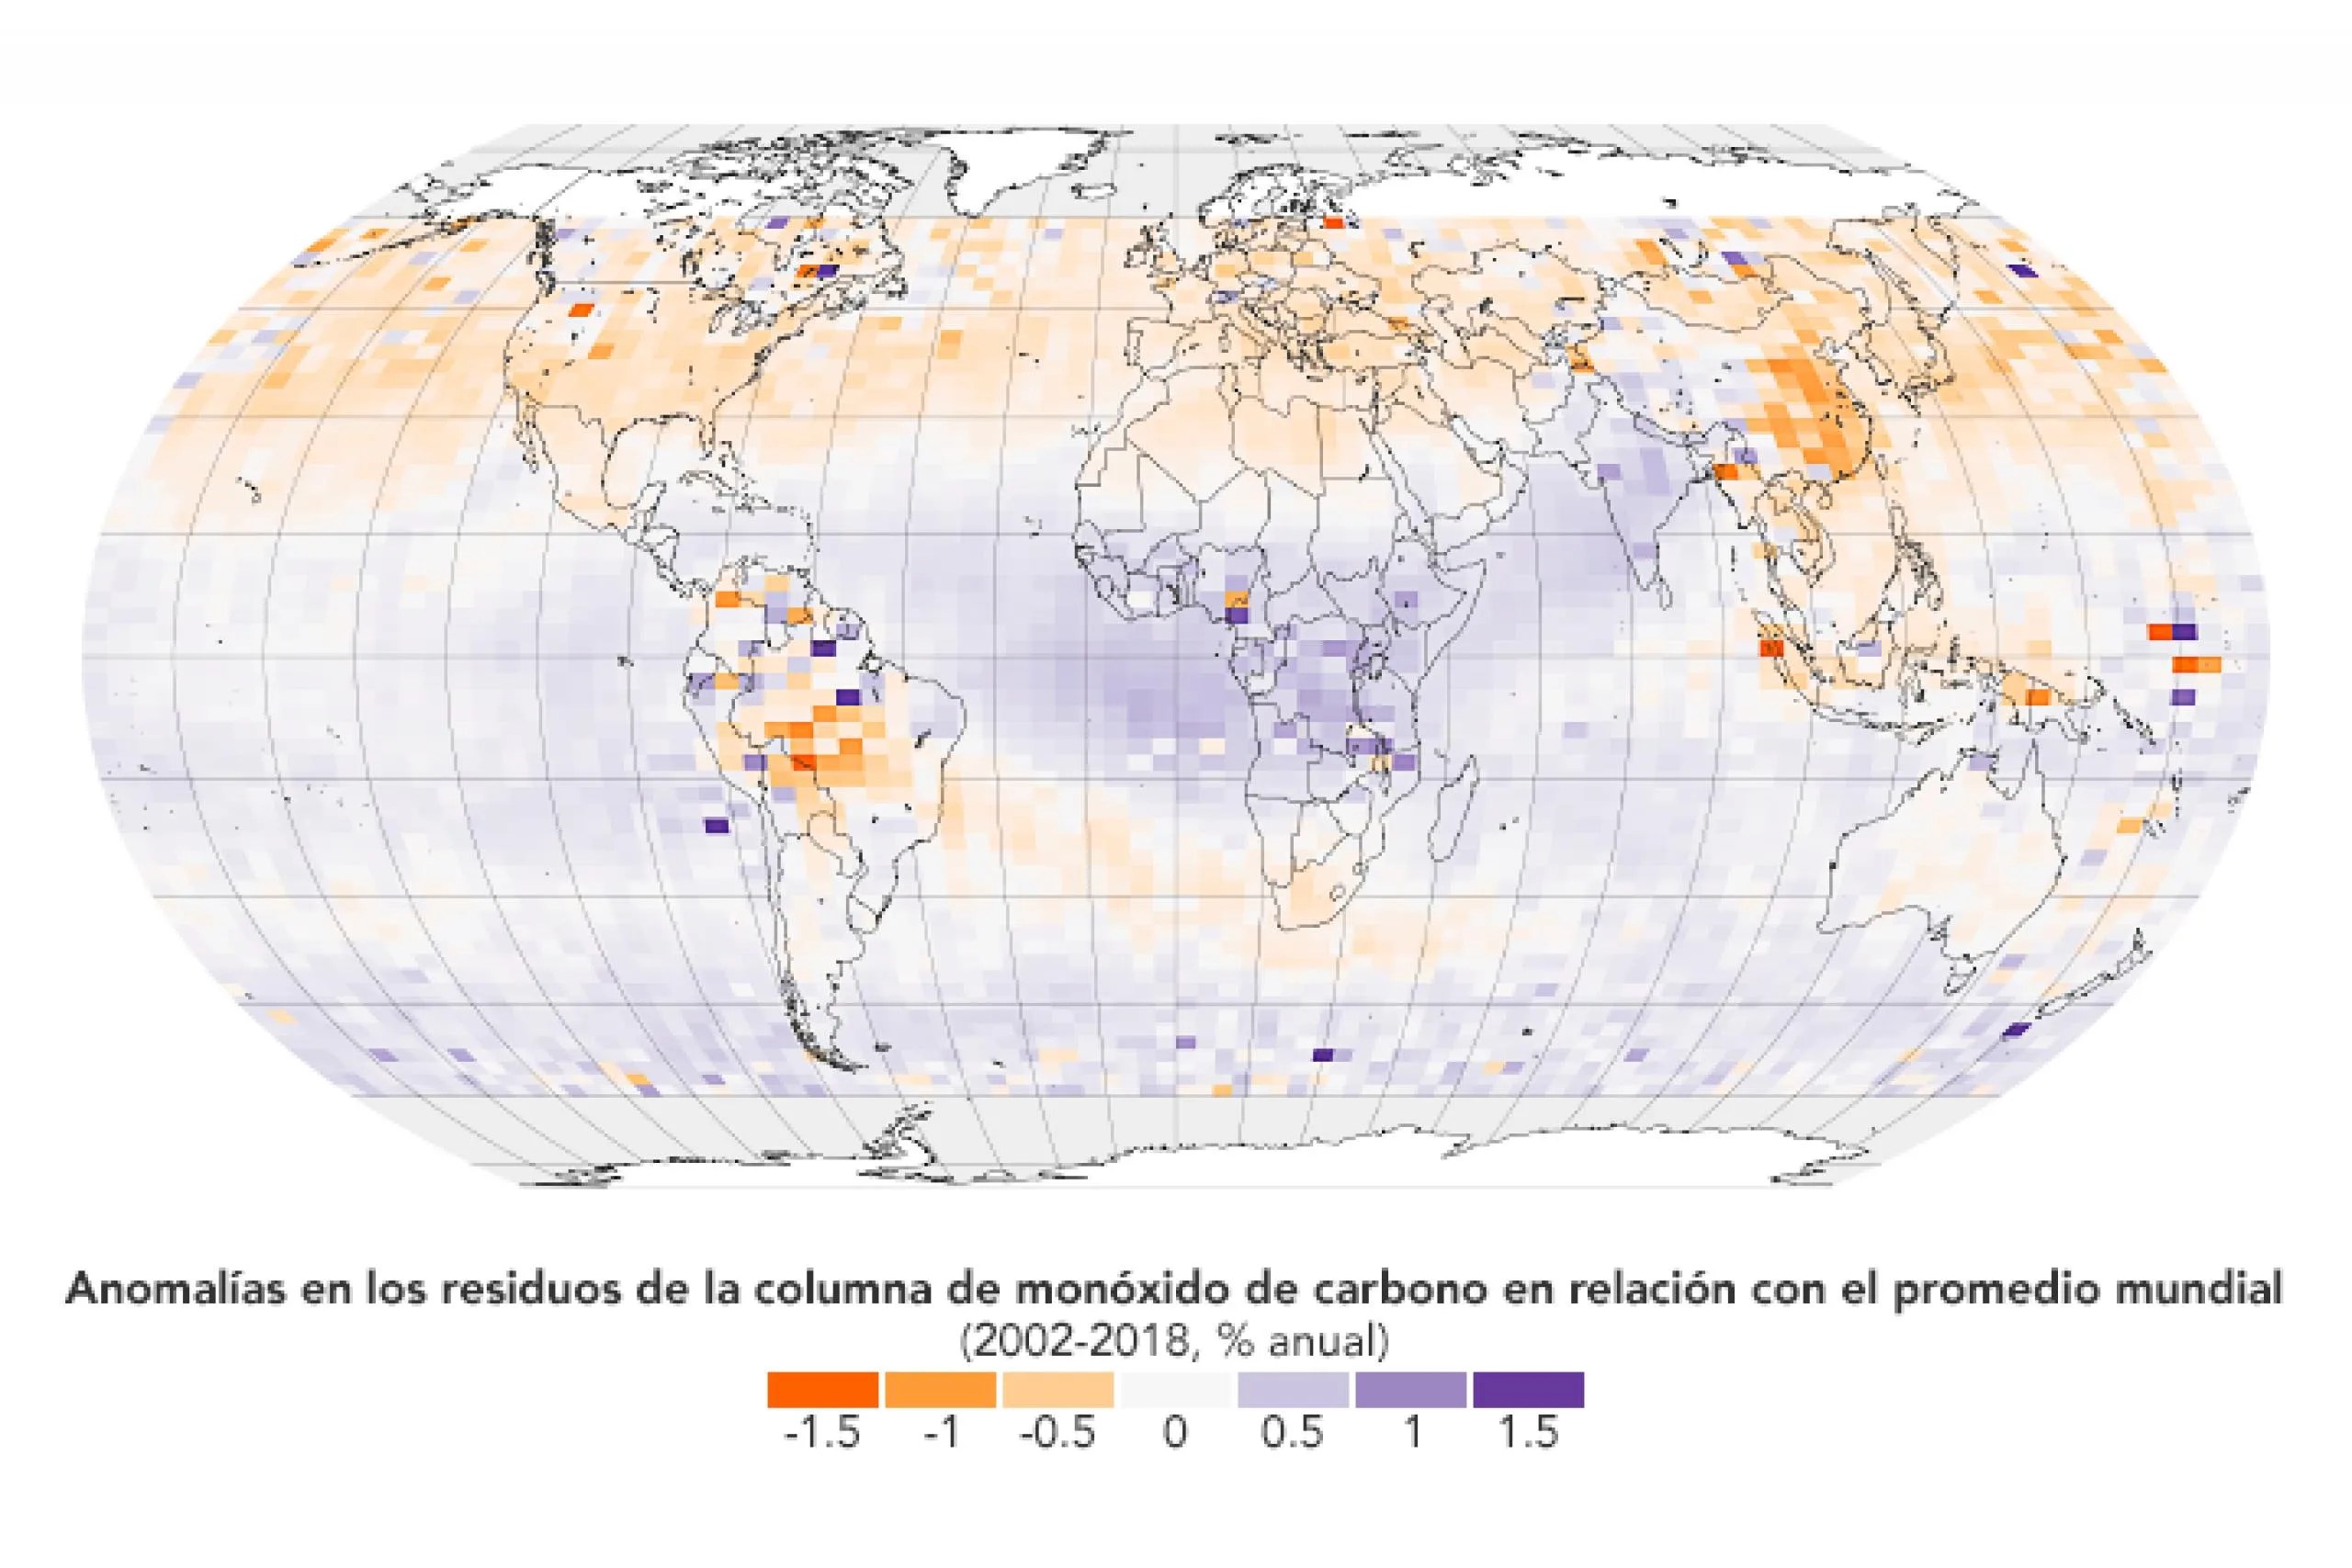 Anomalías en los residuos de la columna de monóxido de carbono en relación con el promedio mundial